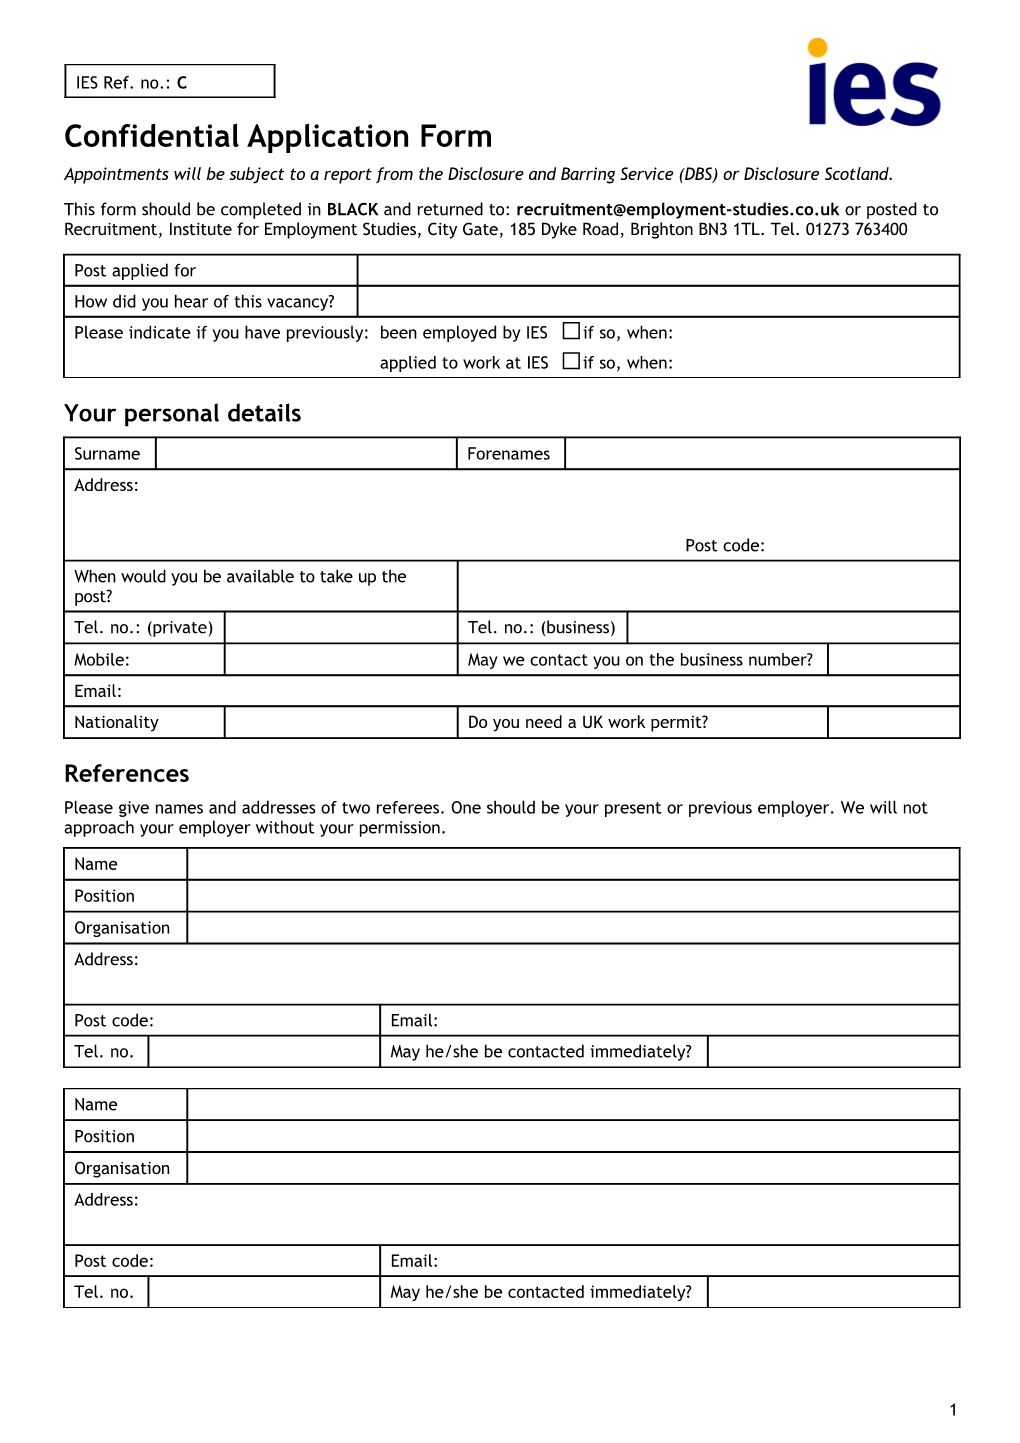 IES Job Application Form